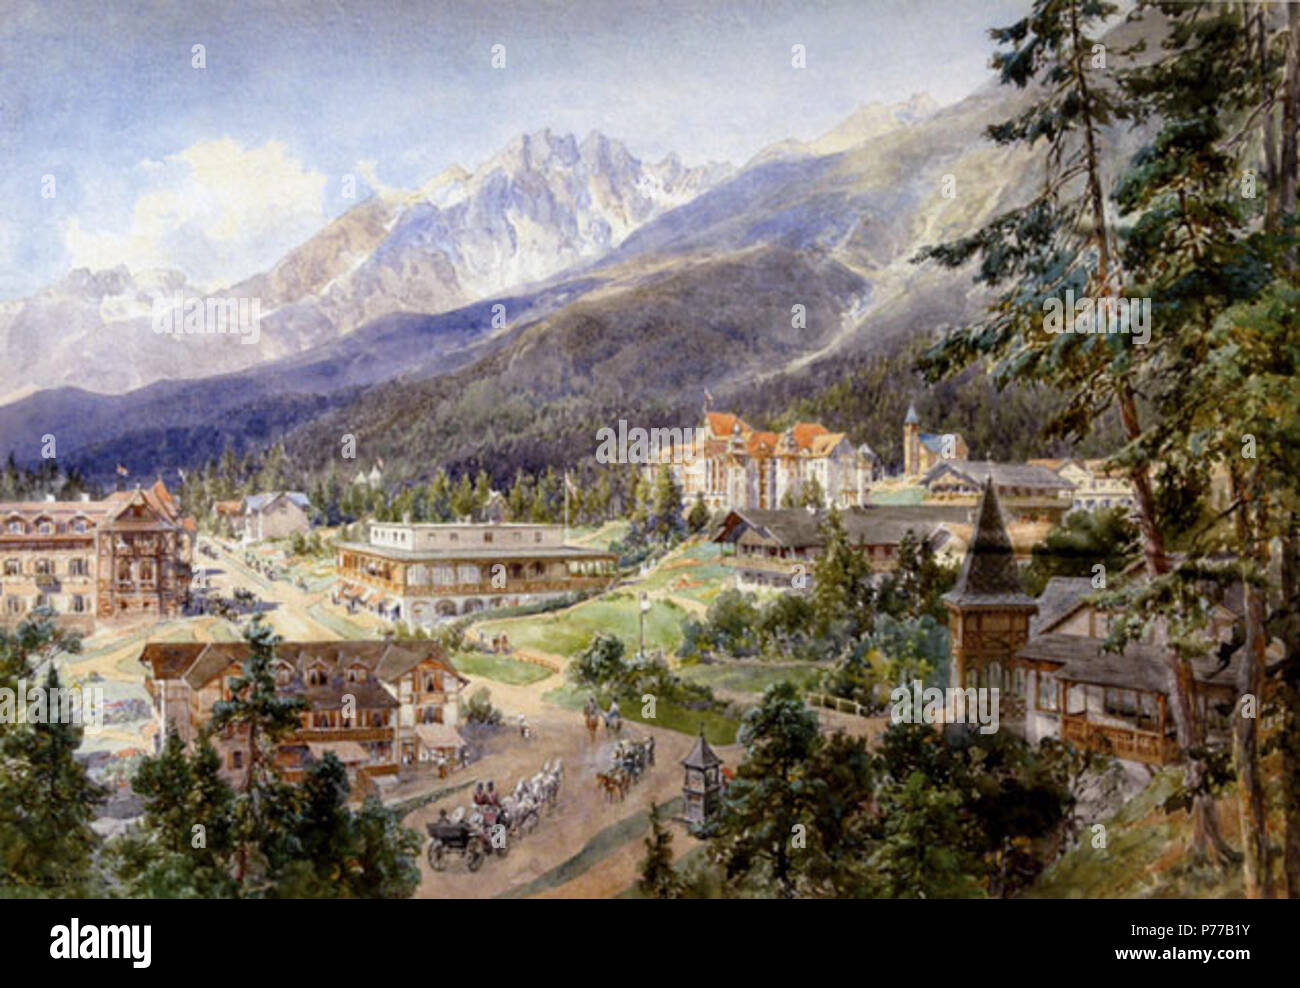 . Deutsch: altschmecks in der Hohen Tatra, ca. 1890 18 Compton, 1890, Altschmecks in der Hohen Tatra Stockfoto